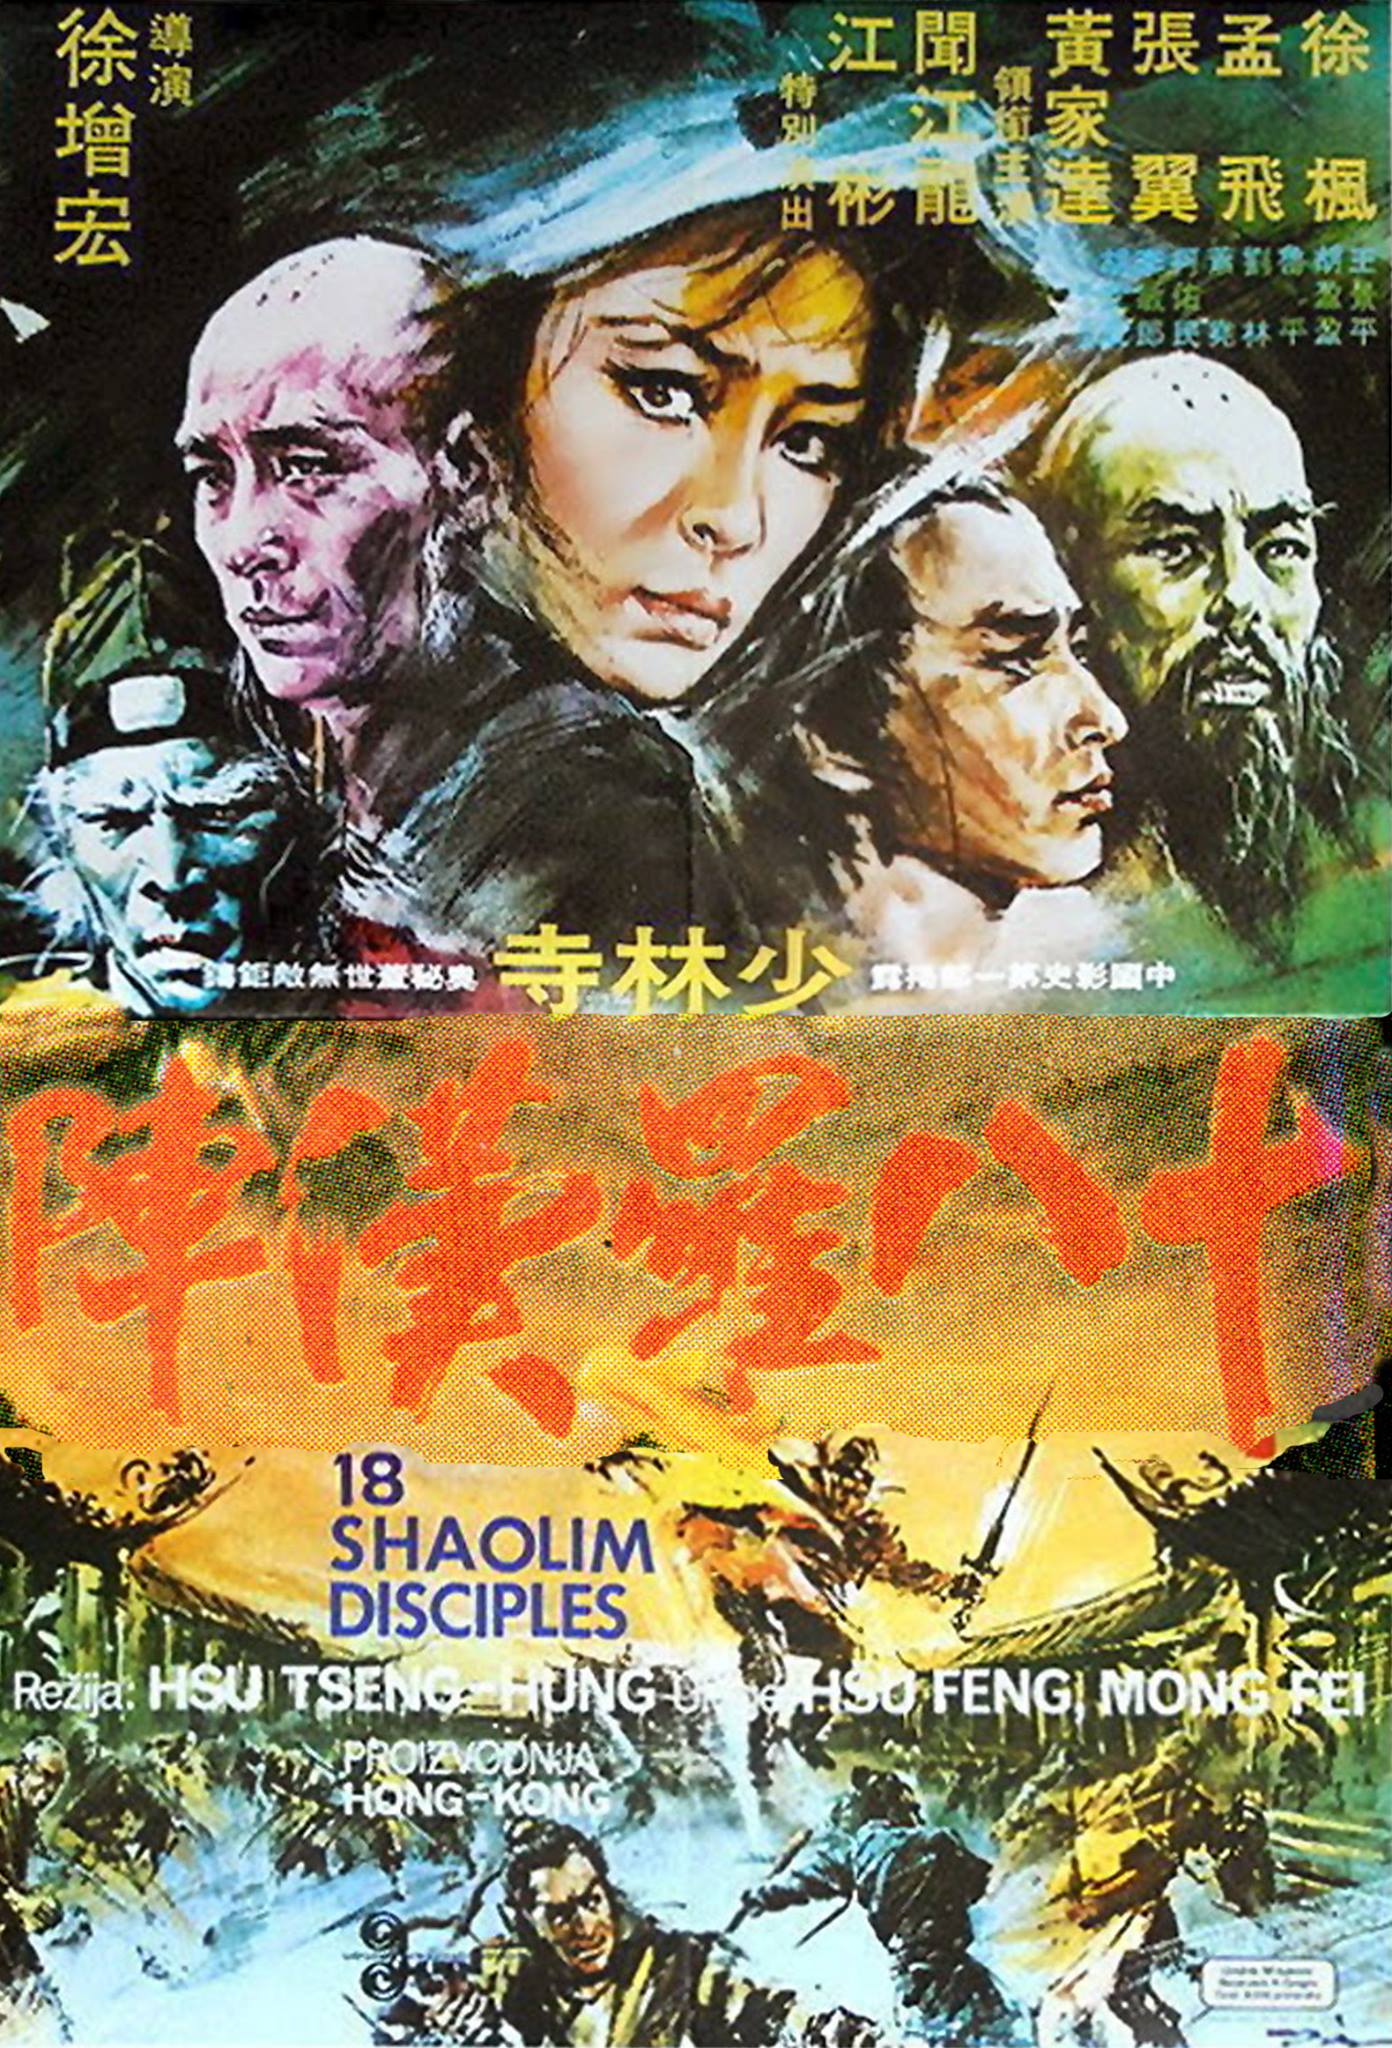 Shi ba luo han zhen (1975) Screenshot 3 